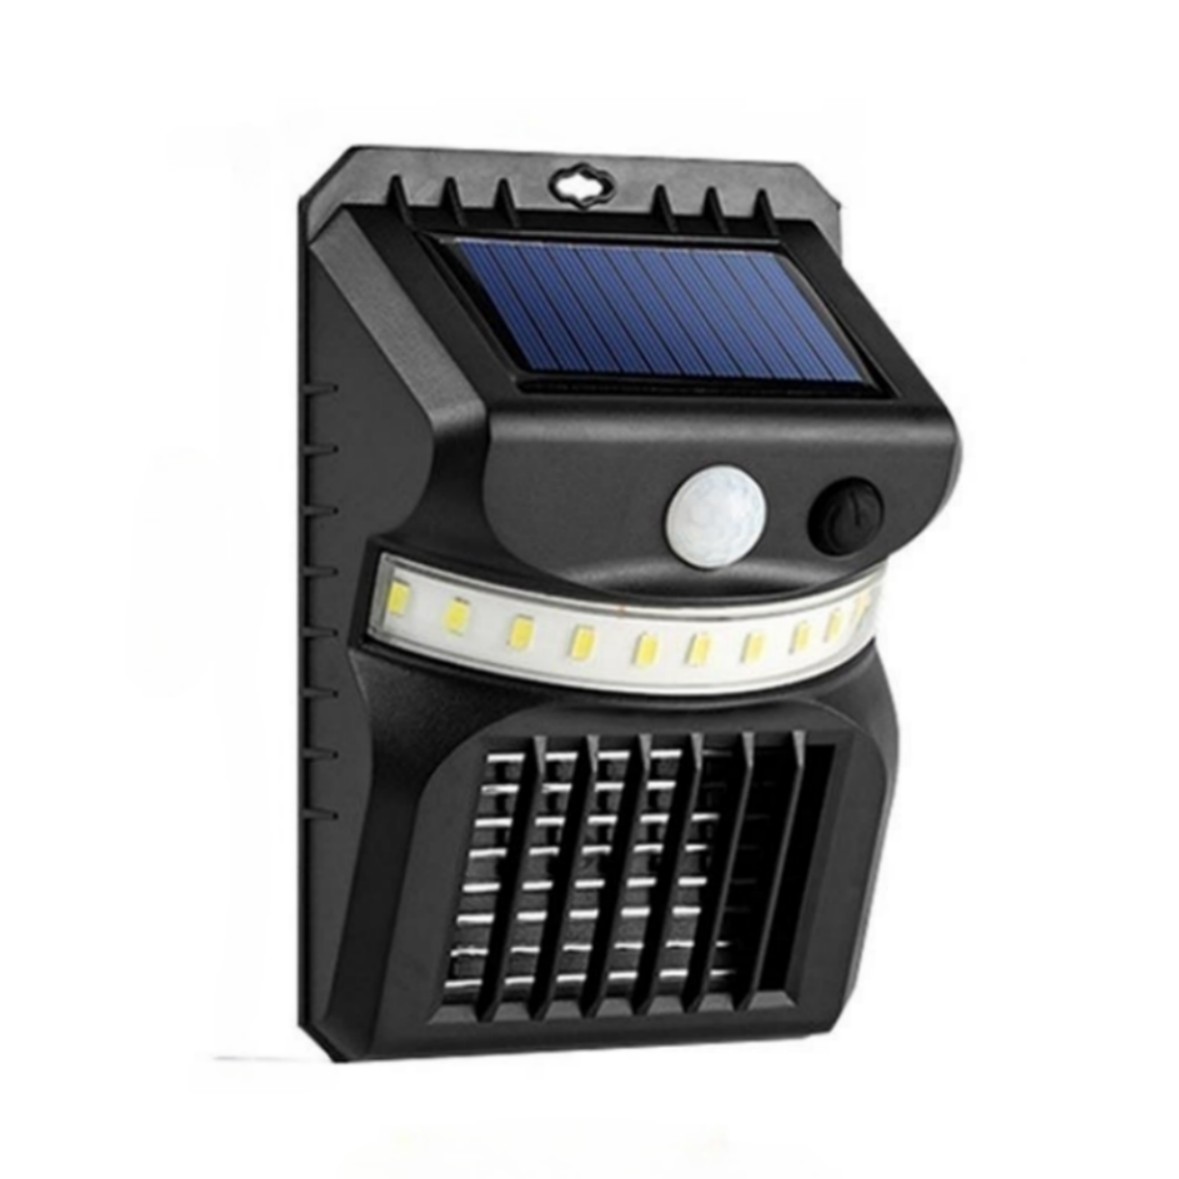 Mosquito Killer Solar Lamp Waterproof IP65 Energy Saving Intelligent Sensor Outdoor Garden Wall Lamp